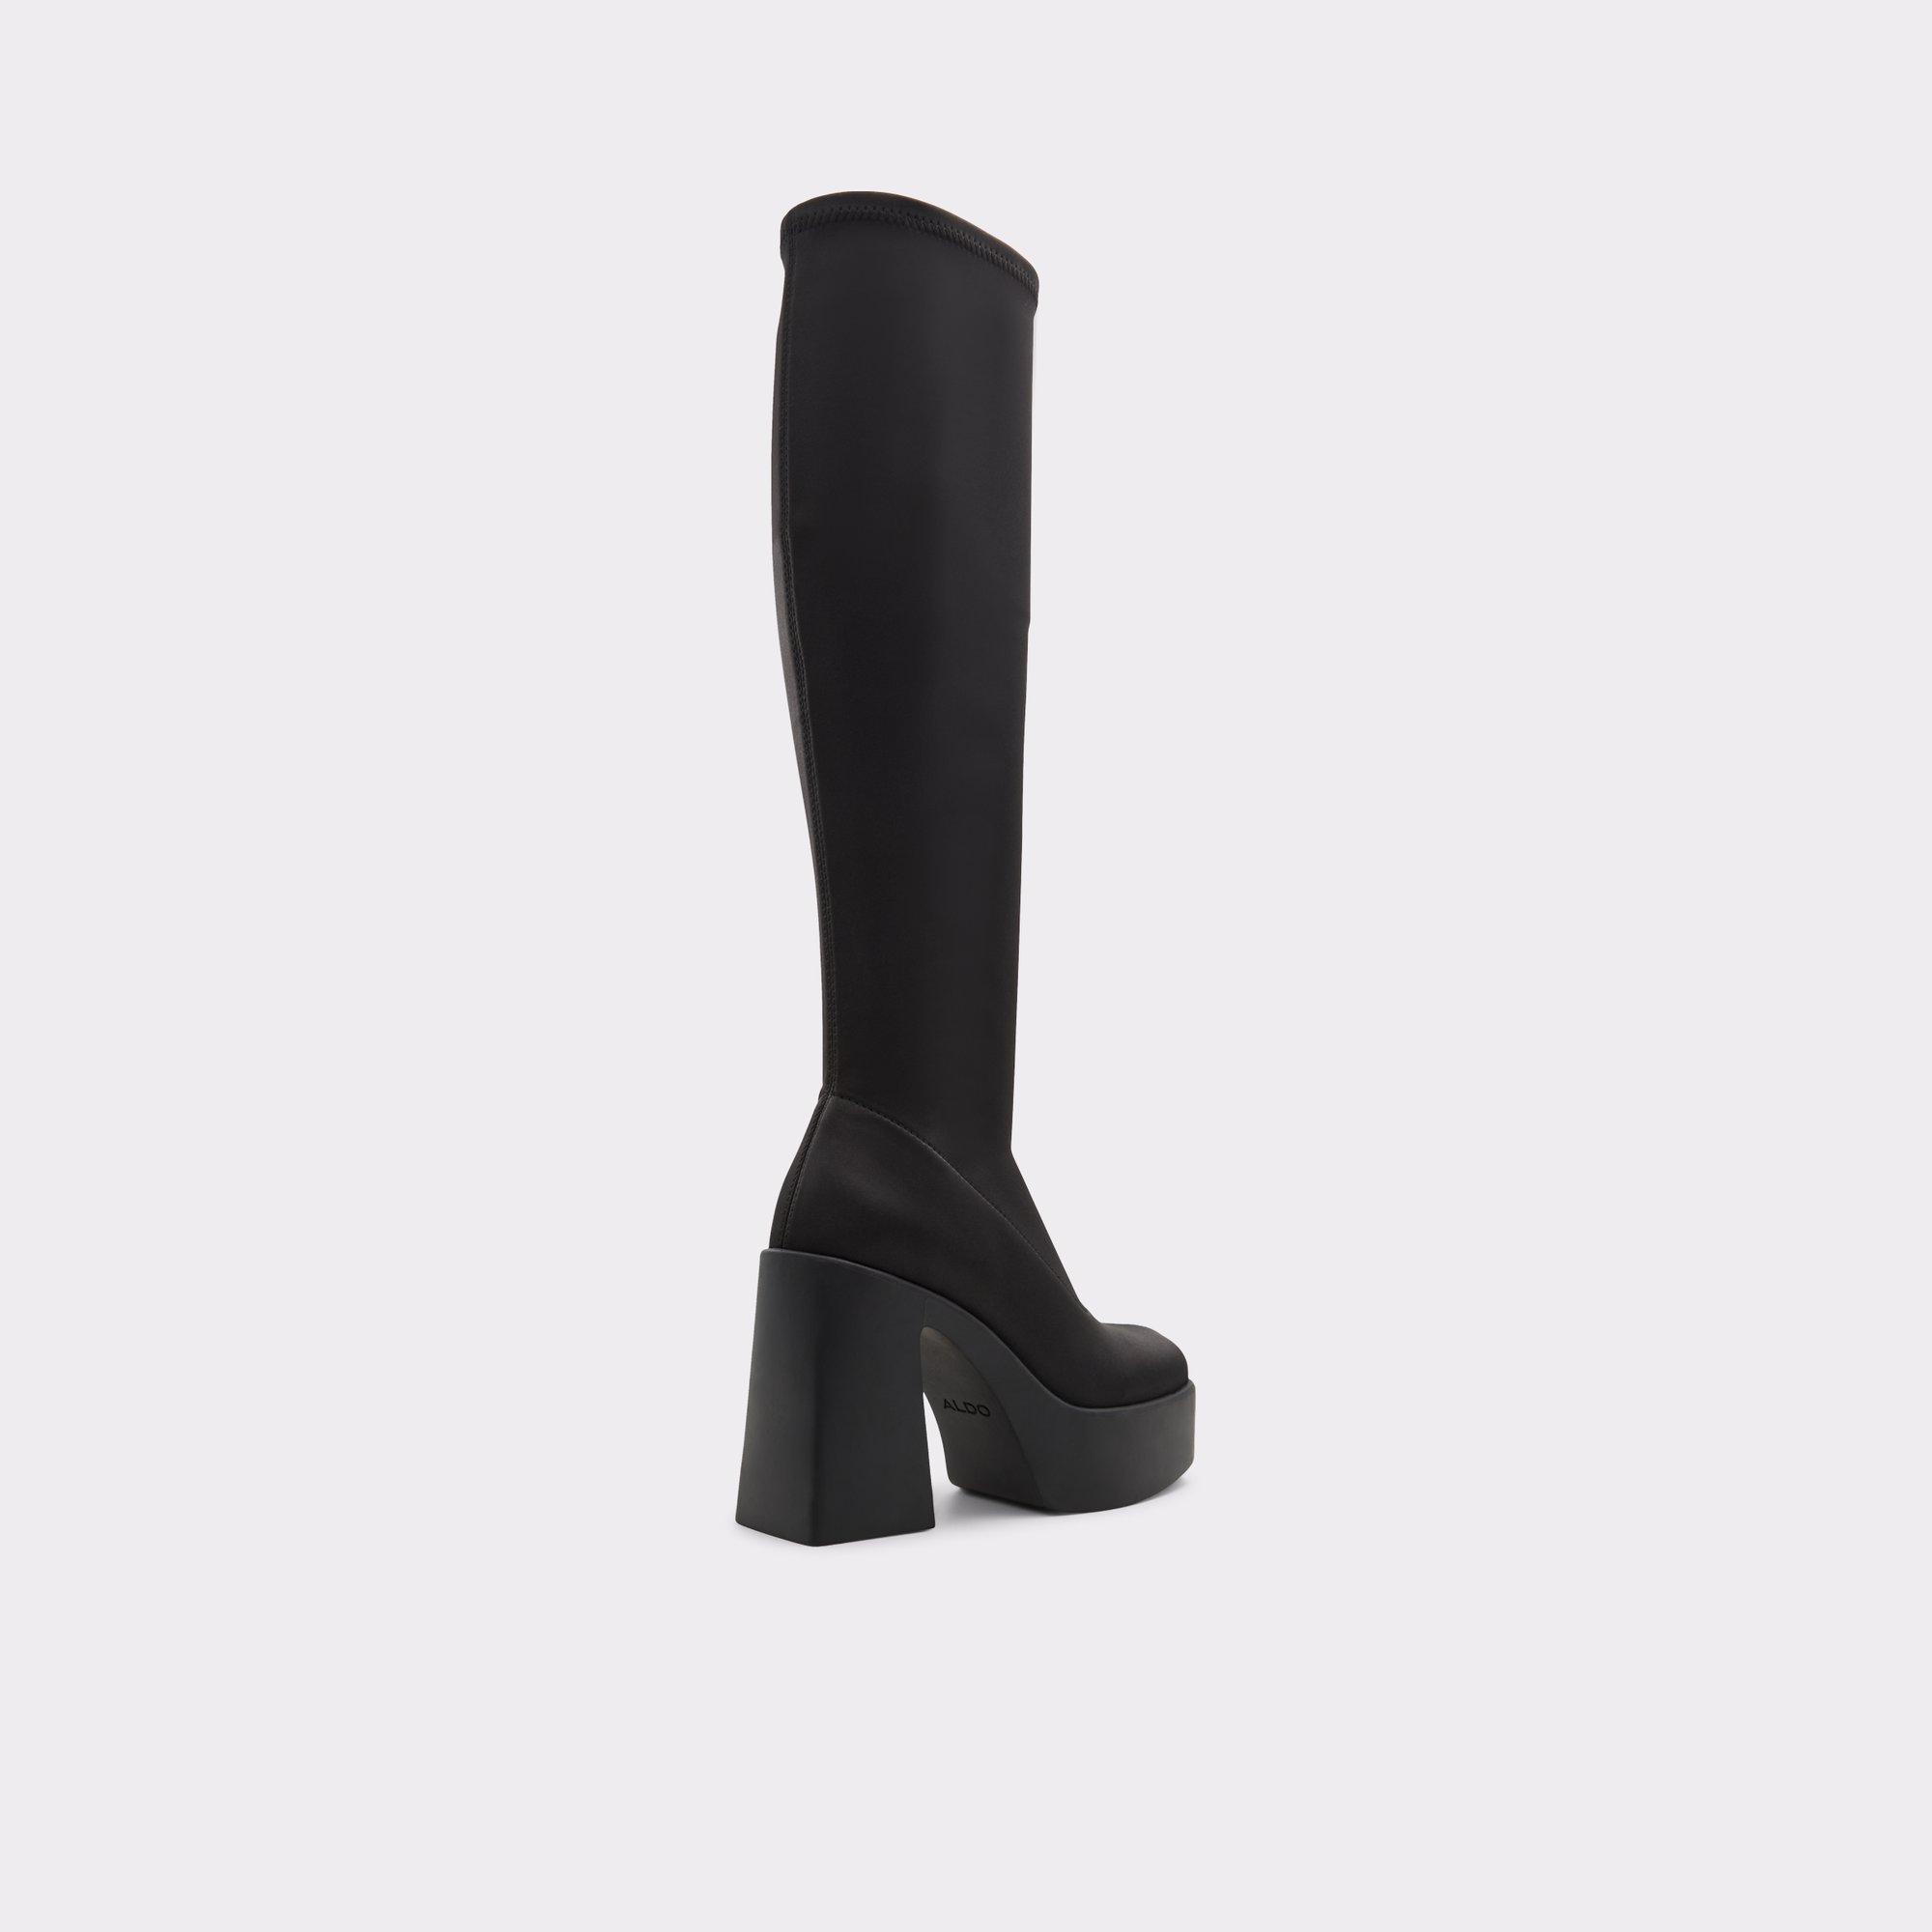 Moulin Black/Black Women's Dress boots | ALDO US